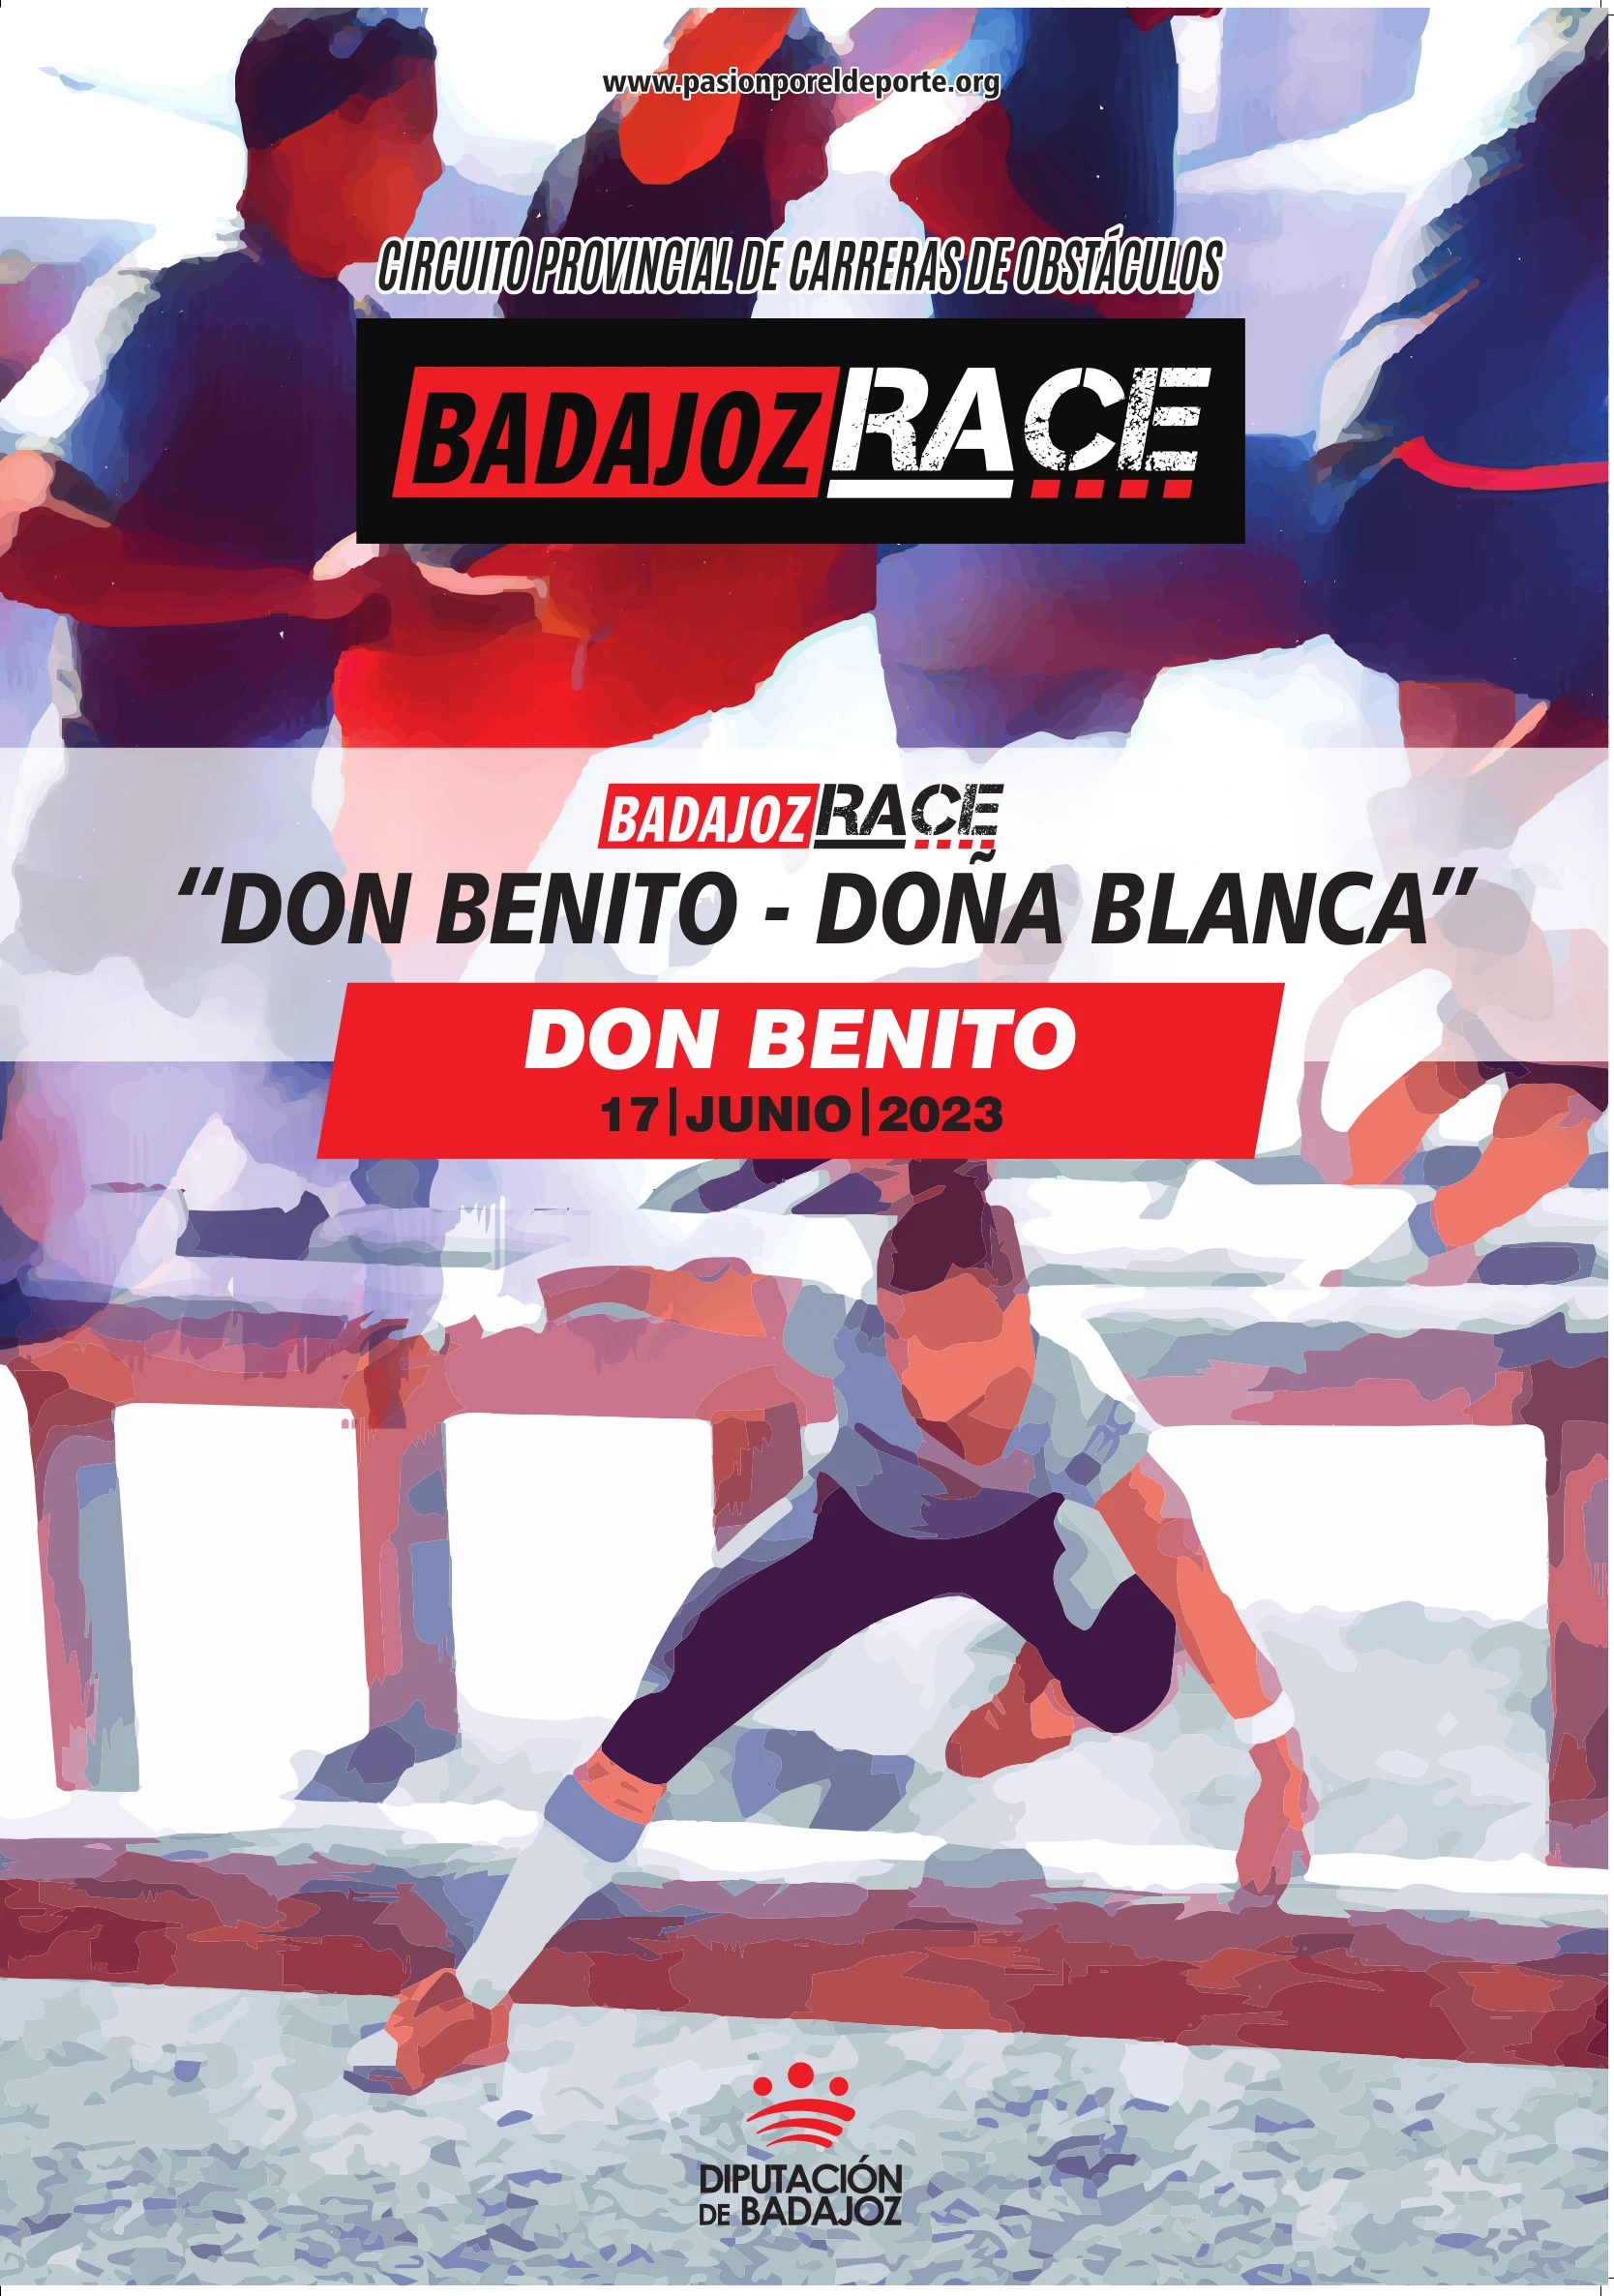 Don Benito Badajoz Race<br />«Don Benito - Doña Blanca»